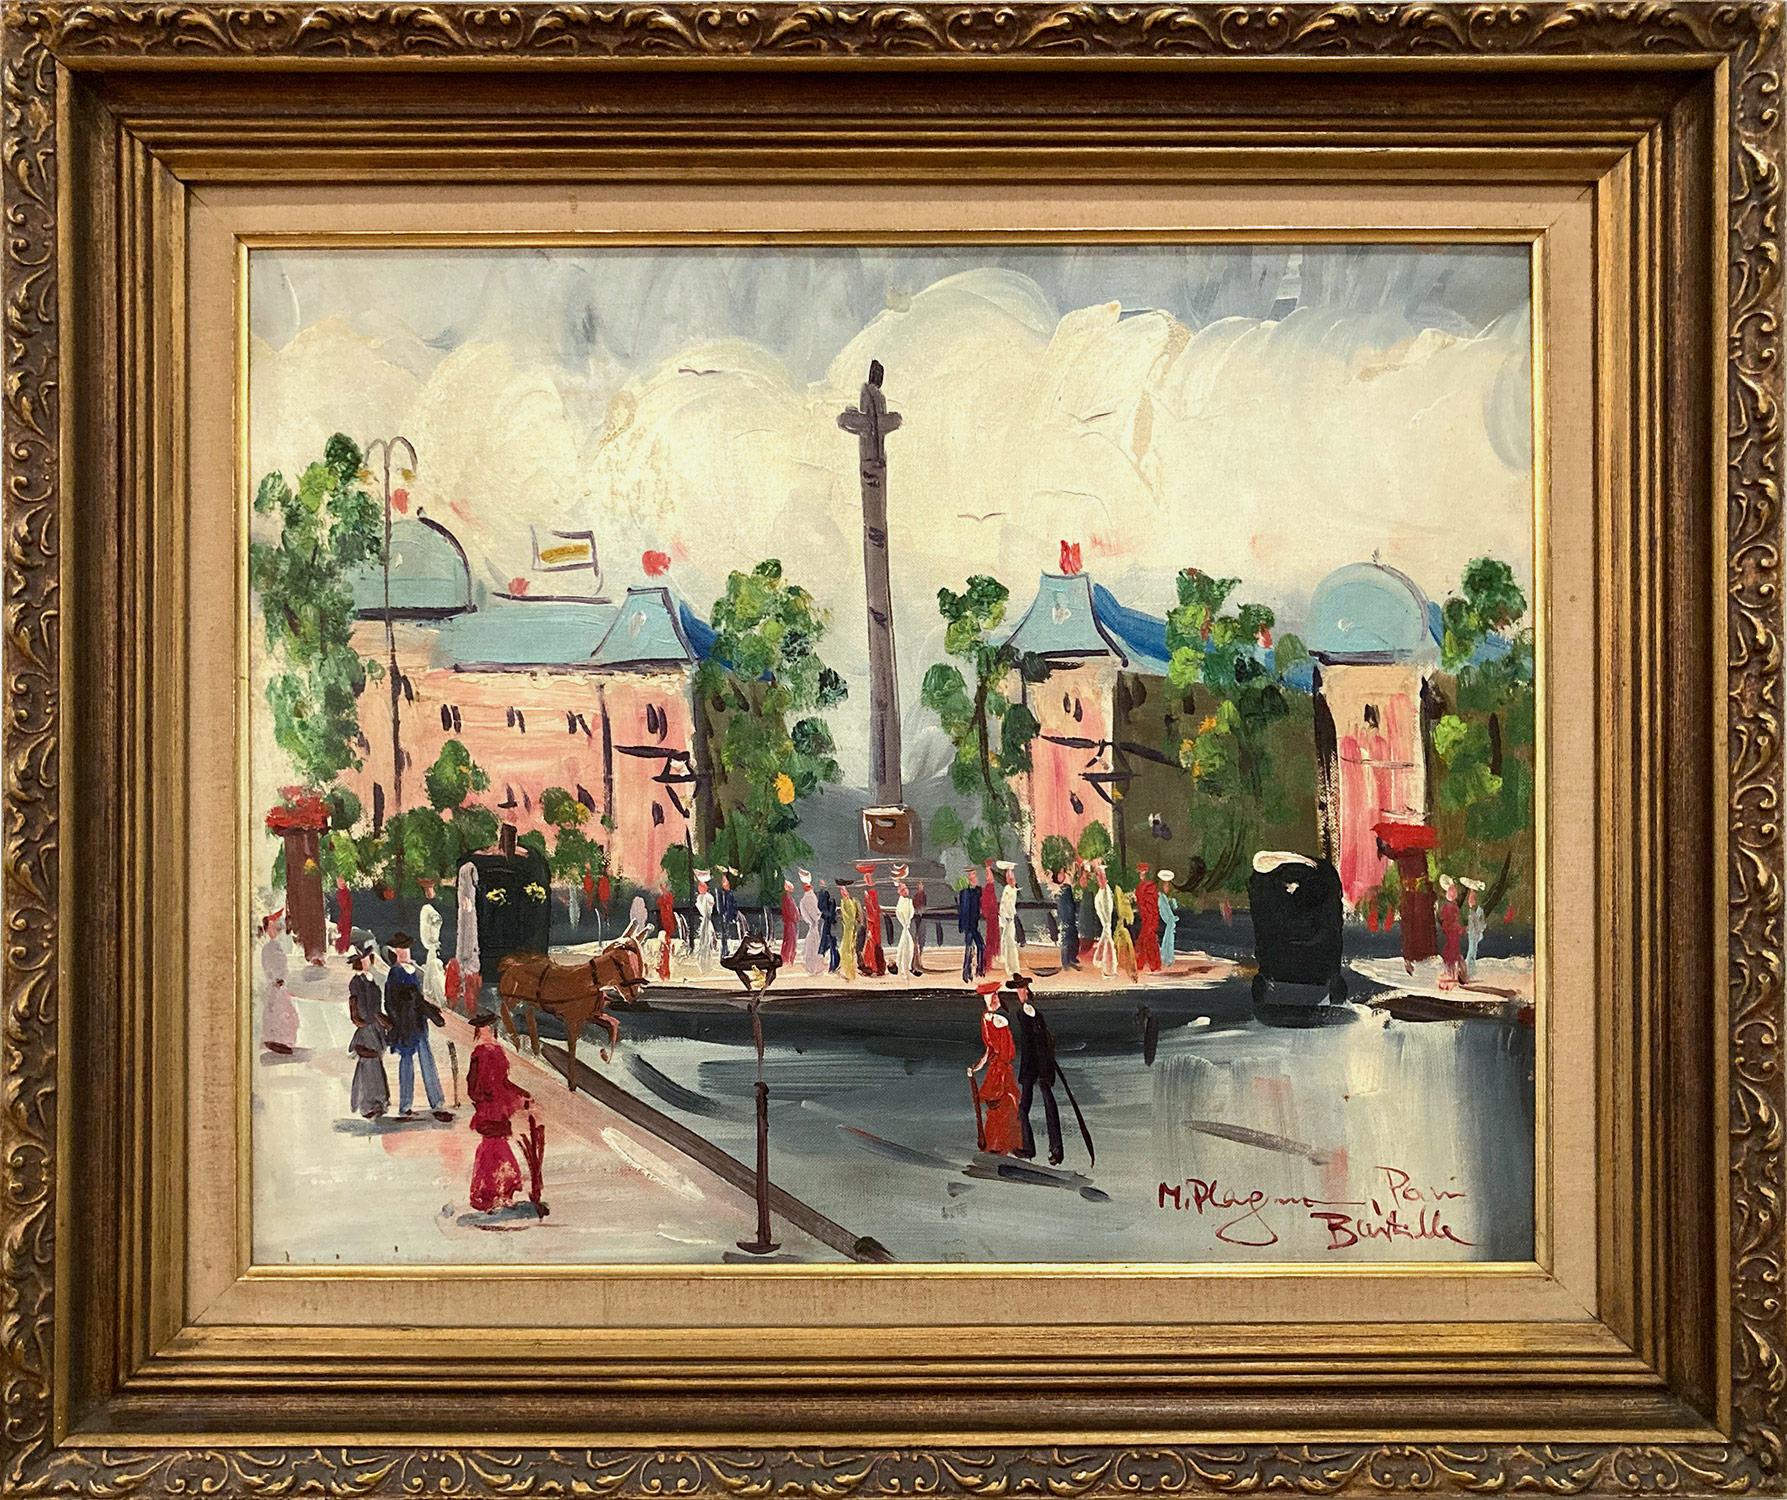 Landscape Painting Unknown - Peinture à l'huile « Place de la Bastille » - Scène de rue impressionniste française d'une ville de Paris